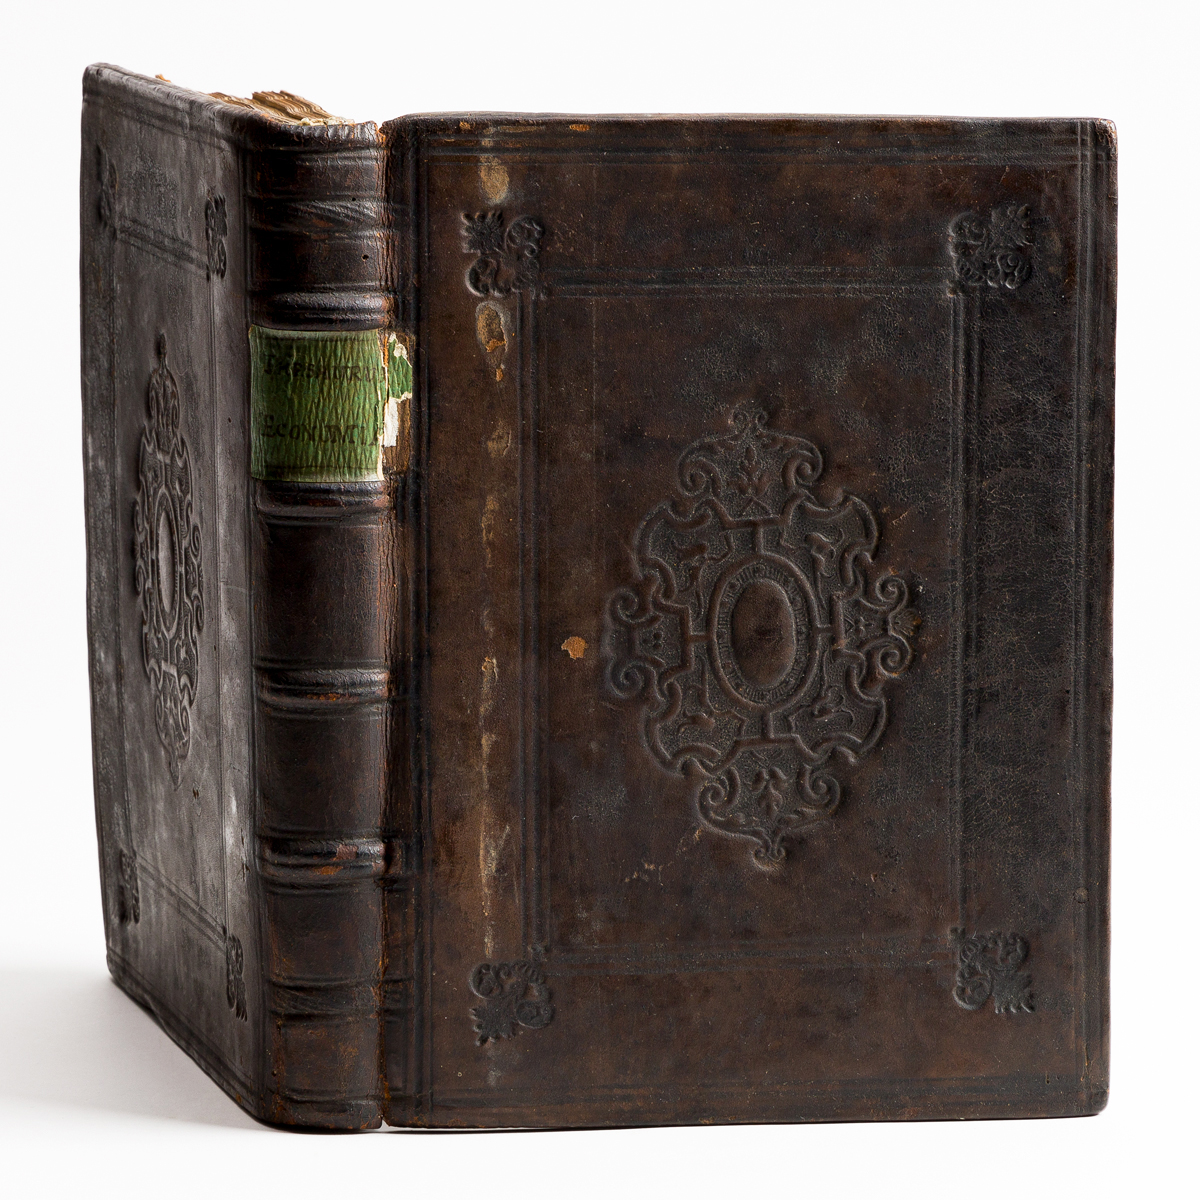 Case, John (d. 1600) Thesaurus Oeconomiae, seu Commentarius in Oeconomica Aristotelis.